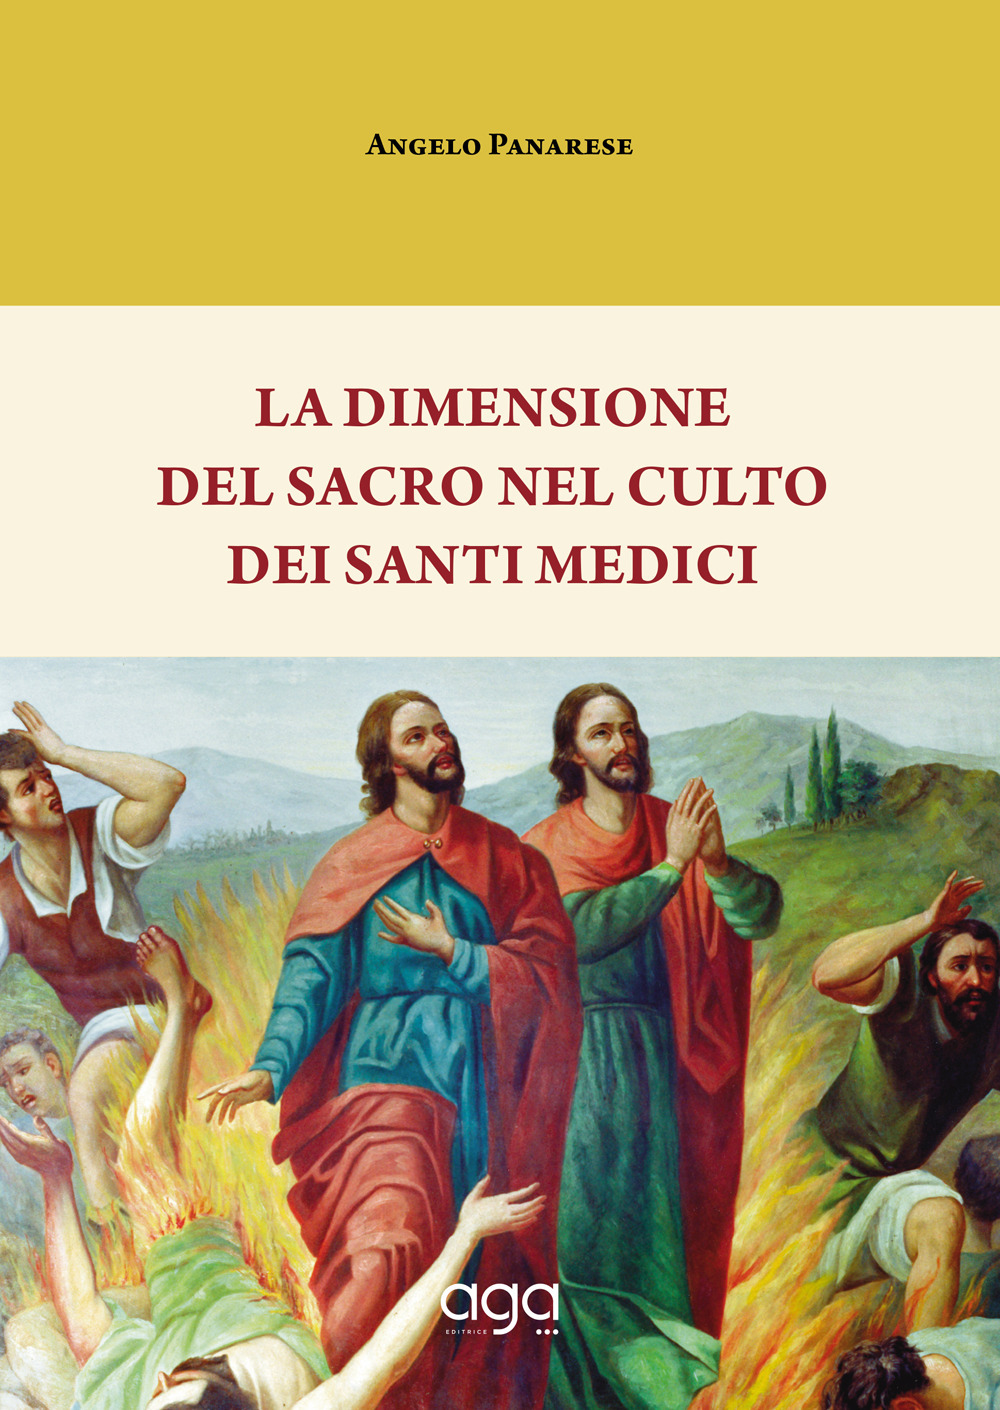 La dimensione del sacro nel culto dei Santi Medici